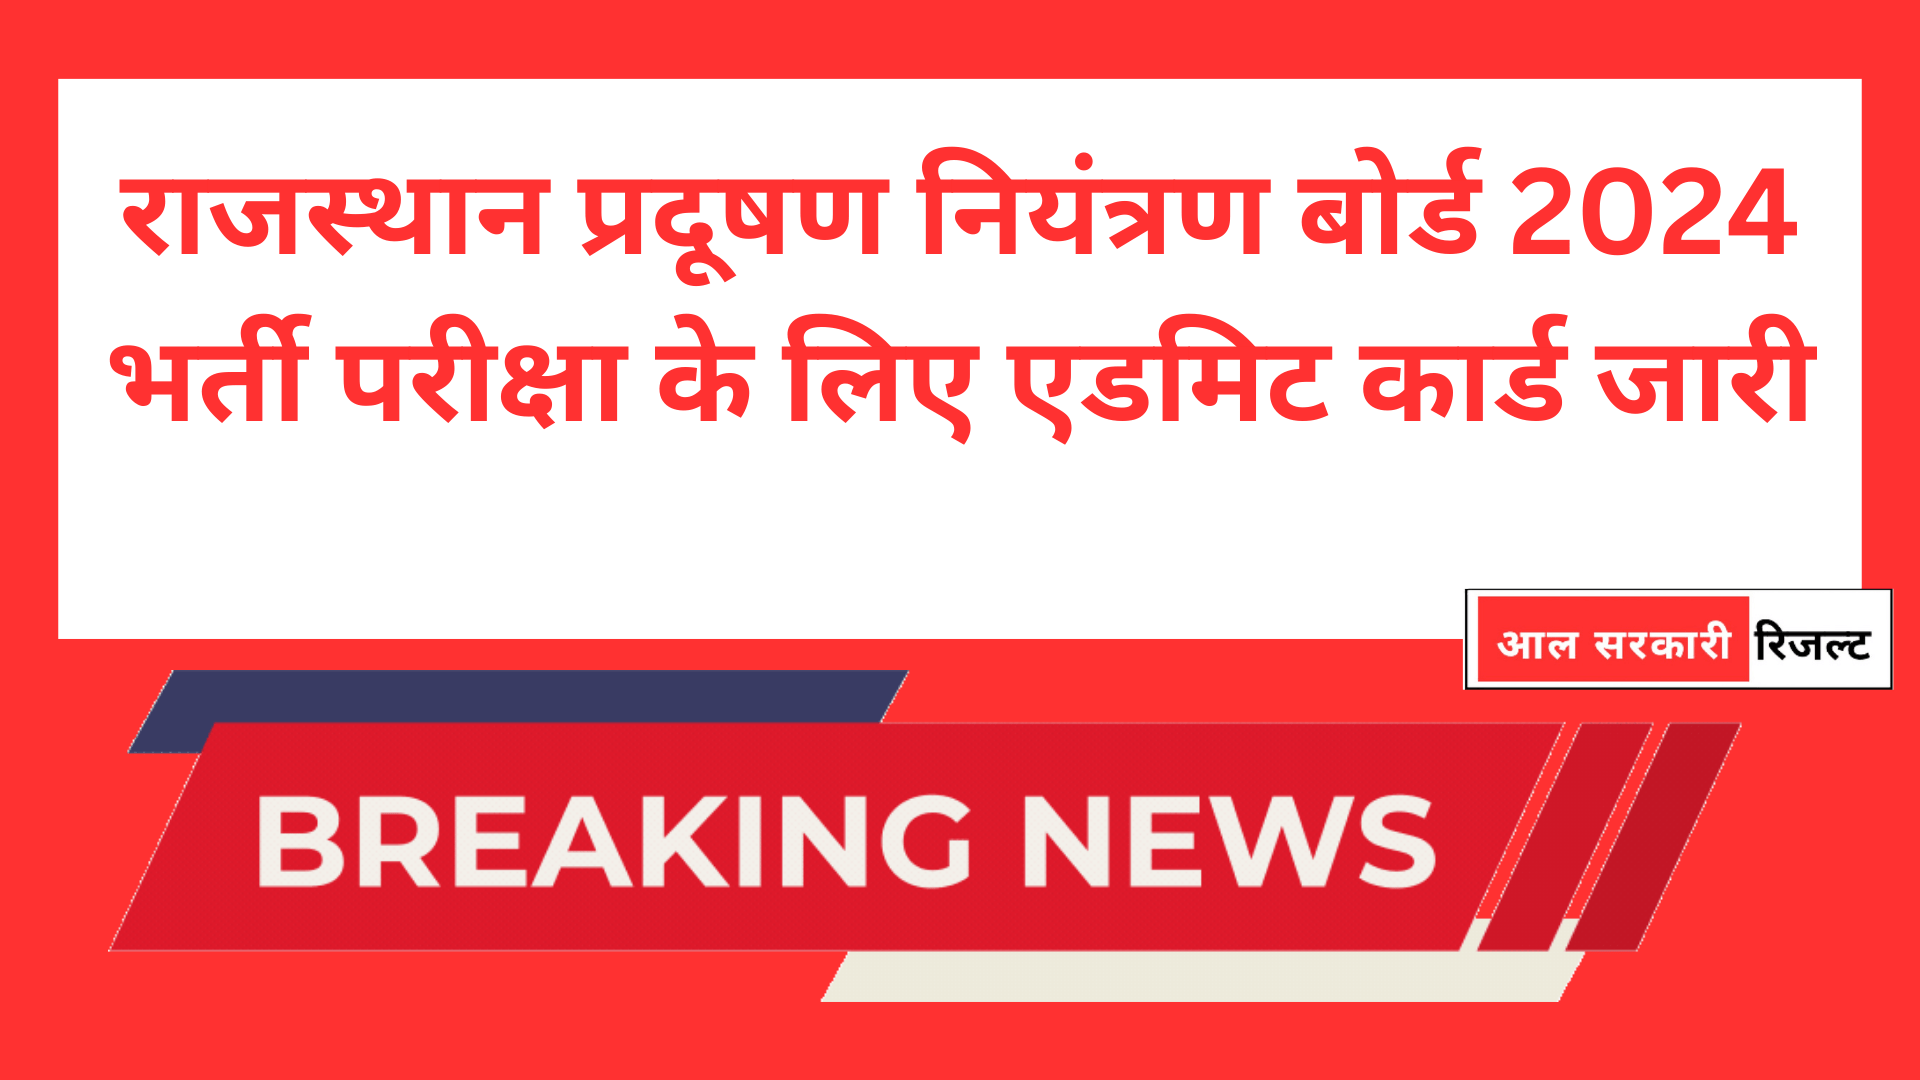 राजस्थान प्रदूषण नियंत्रण बोर्ड 2024 भर्ती परीक्षा के लिए एडमिट कार्ड जारी